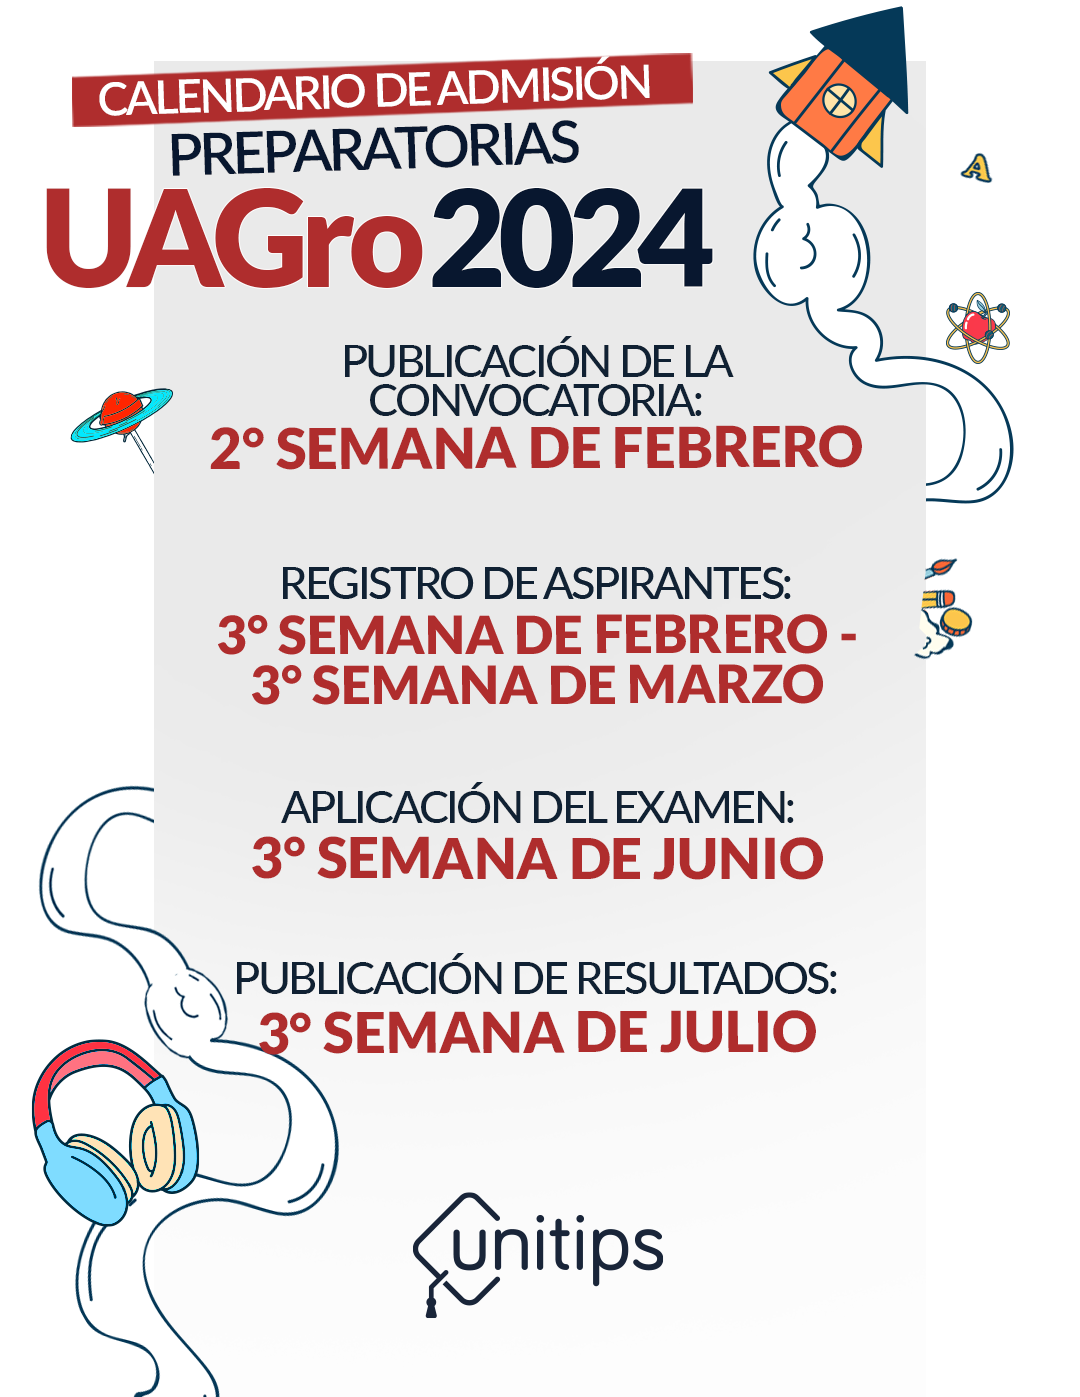 Ingreso a las preparatorias de la UAGro 2024